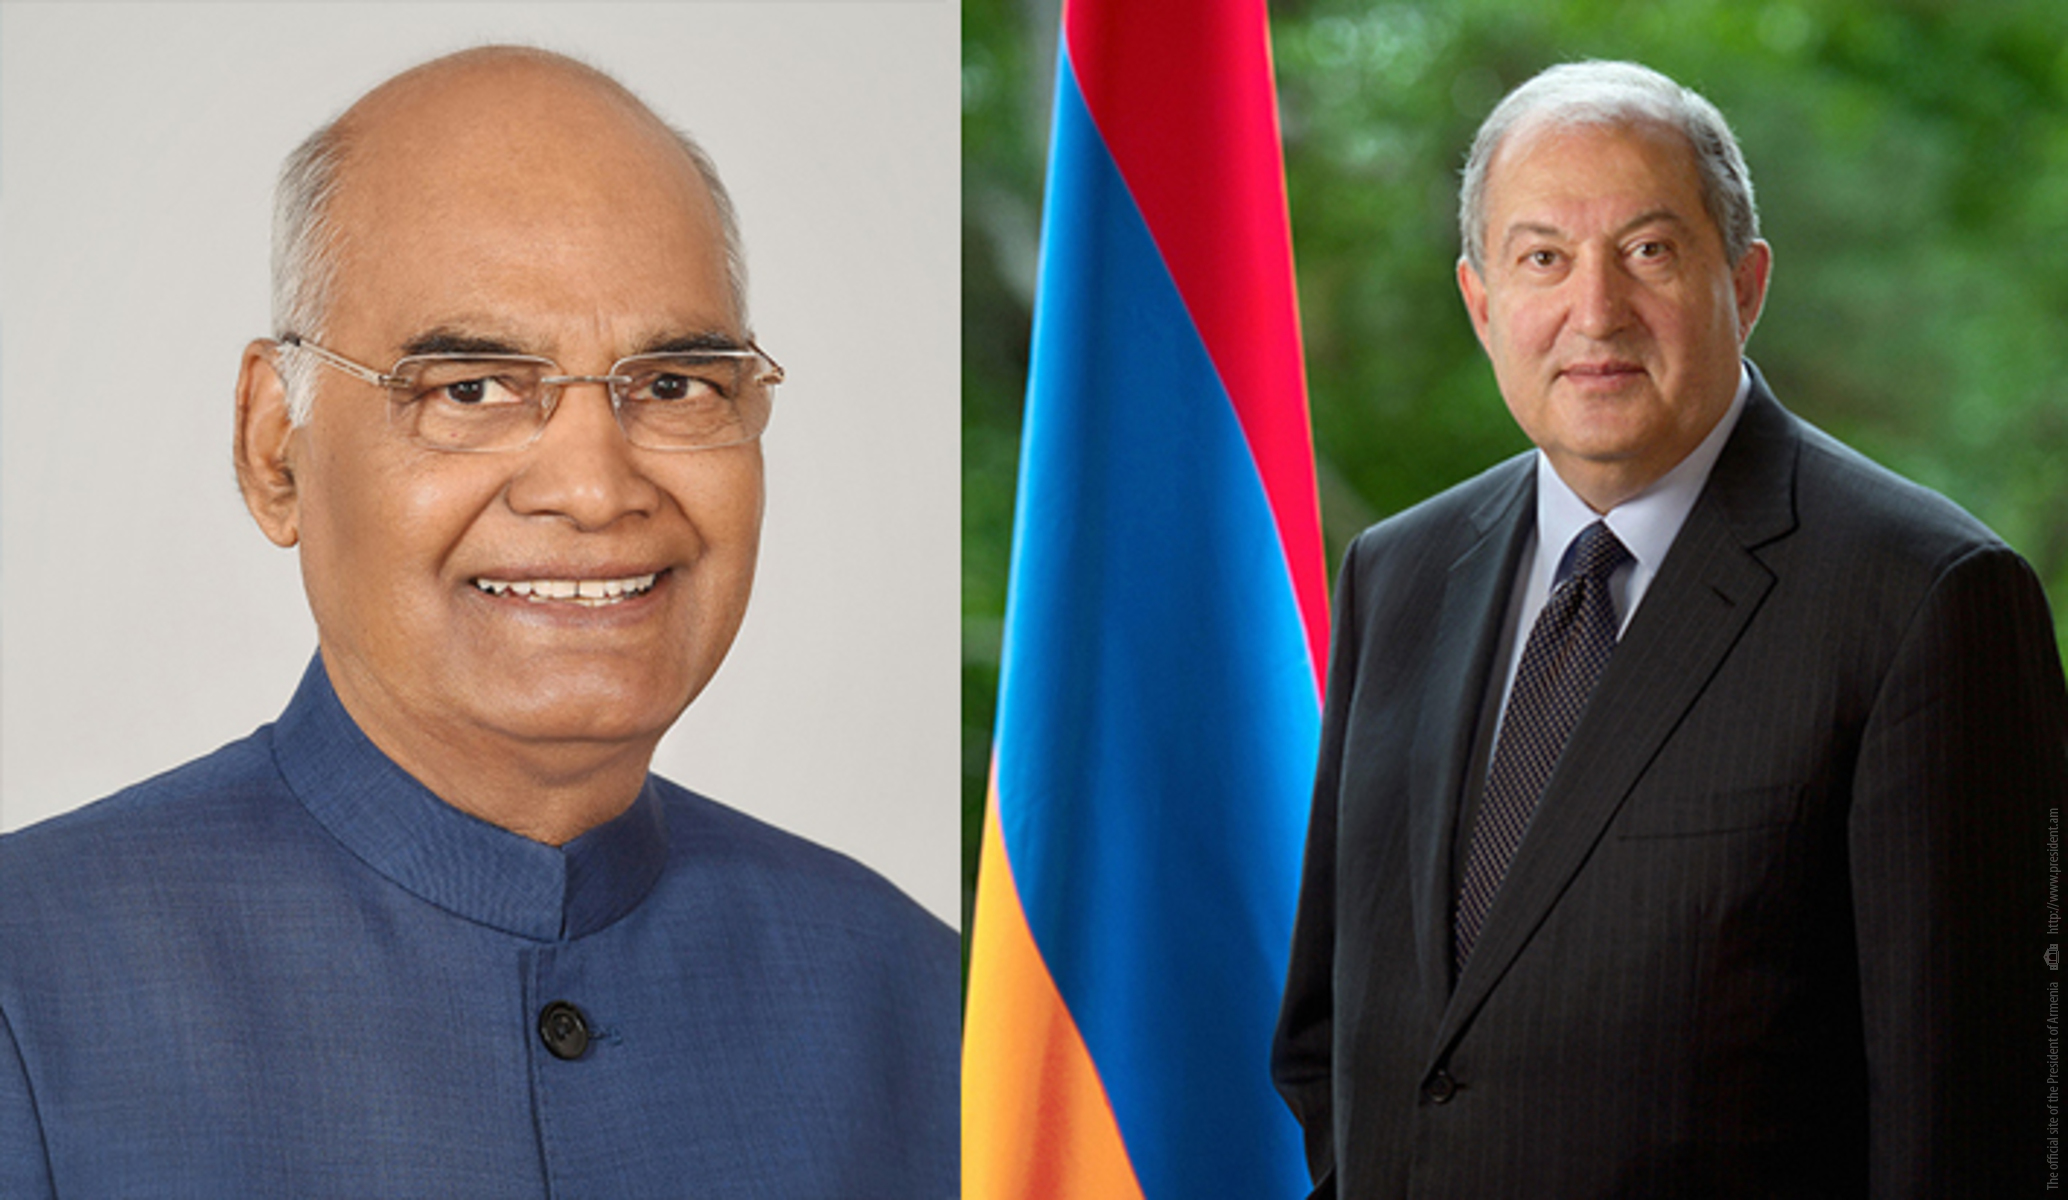 Հնդկաստանին և Հայաստանին միավորում են ջերմ և բարեկամական կապերը. Անկախության տոնի առթիվ նախագահ Արմեն Սարգսյանին շնորհավորել է Հնդկաստանի նախագահը